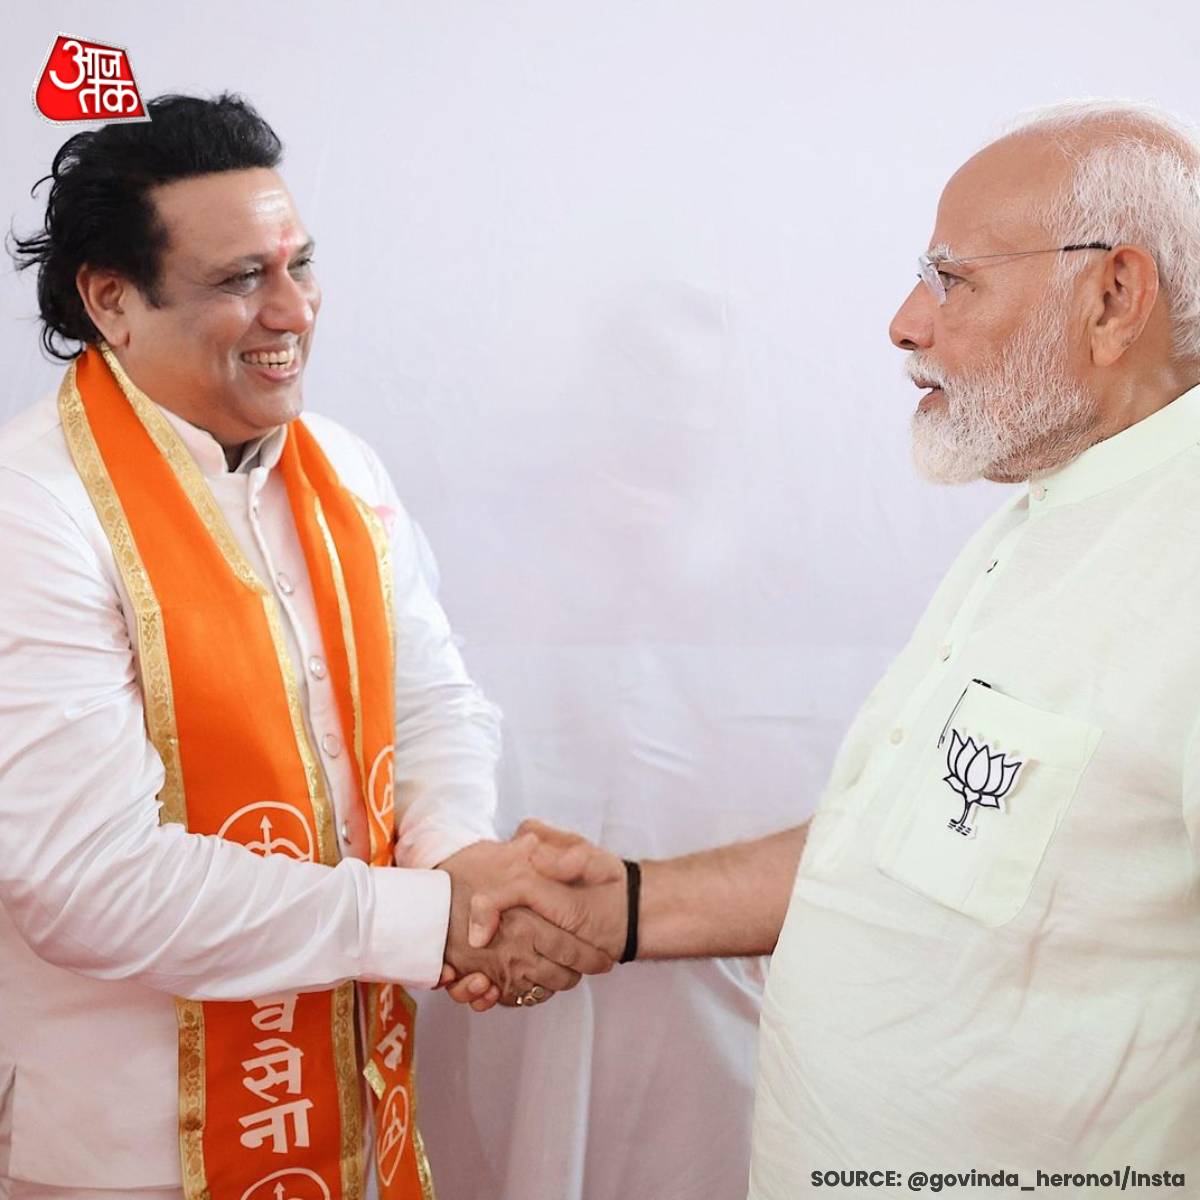 बॉलीवुड अभिनेता और शिवसेना (शिंदे गुट) के नेता गोविंदा ने पीएम मोदी से मुलाकात की तस्वीर साझा की। #Govinda #NarendraModi #LoksabhaElections2024 #BollywoodActor #ATCard